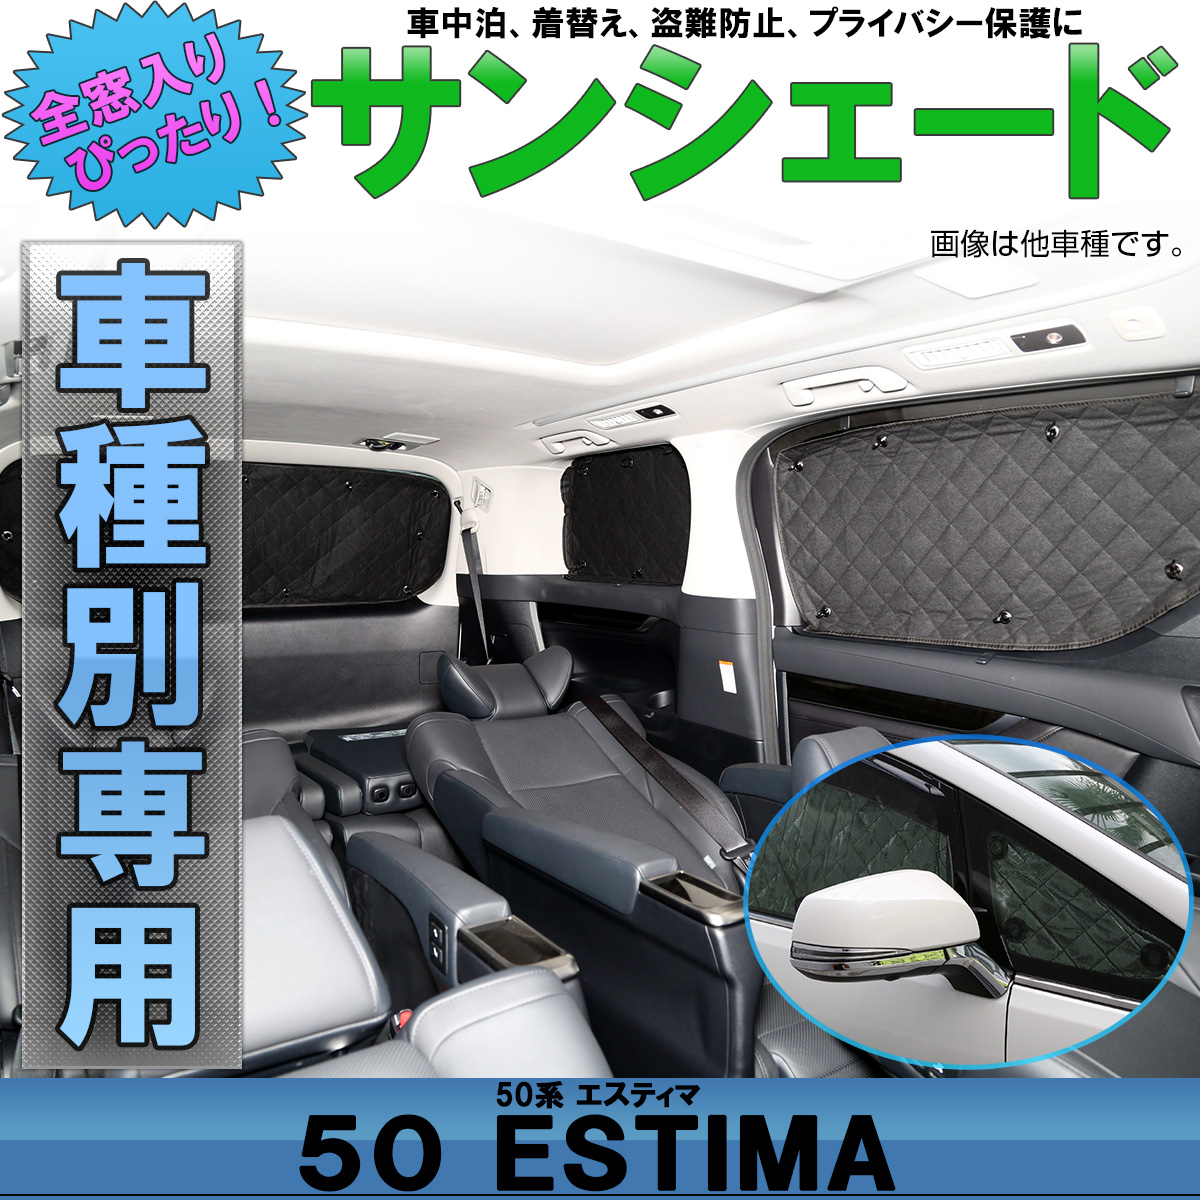 トヨタ 50系 エスティマ 専用設計 サンシェード 全窓用セット 5層構造 ブラックメッシュ 車中泊 プライバシー保護 S 646